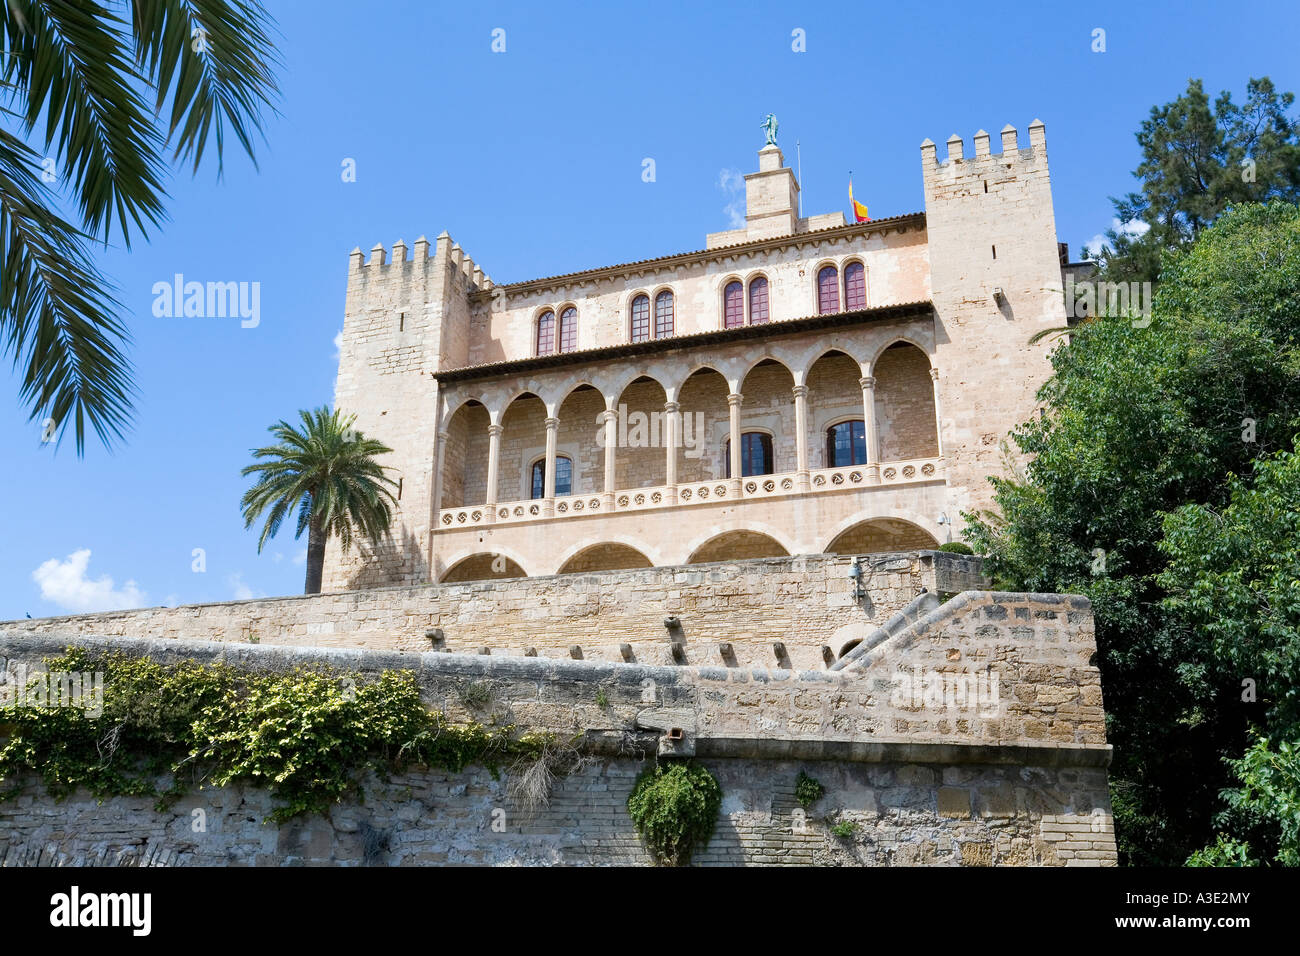 Der Almudaina-Palast in der Nähe der Kathedrale von Palma de Mallorca, Mallorca, Balearen, Spanien Stockfoto